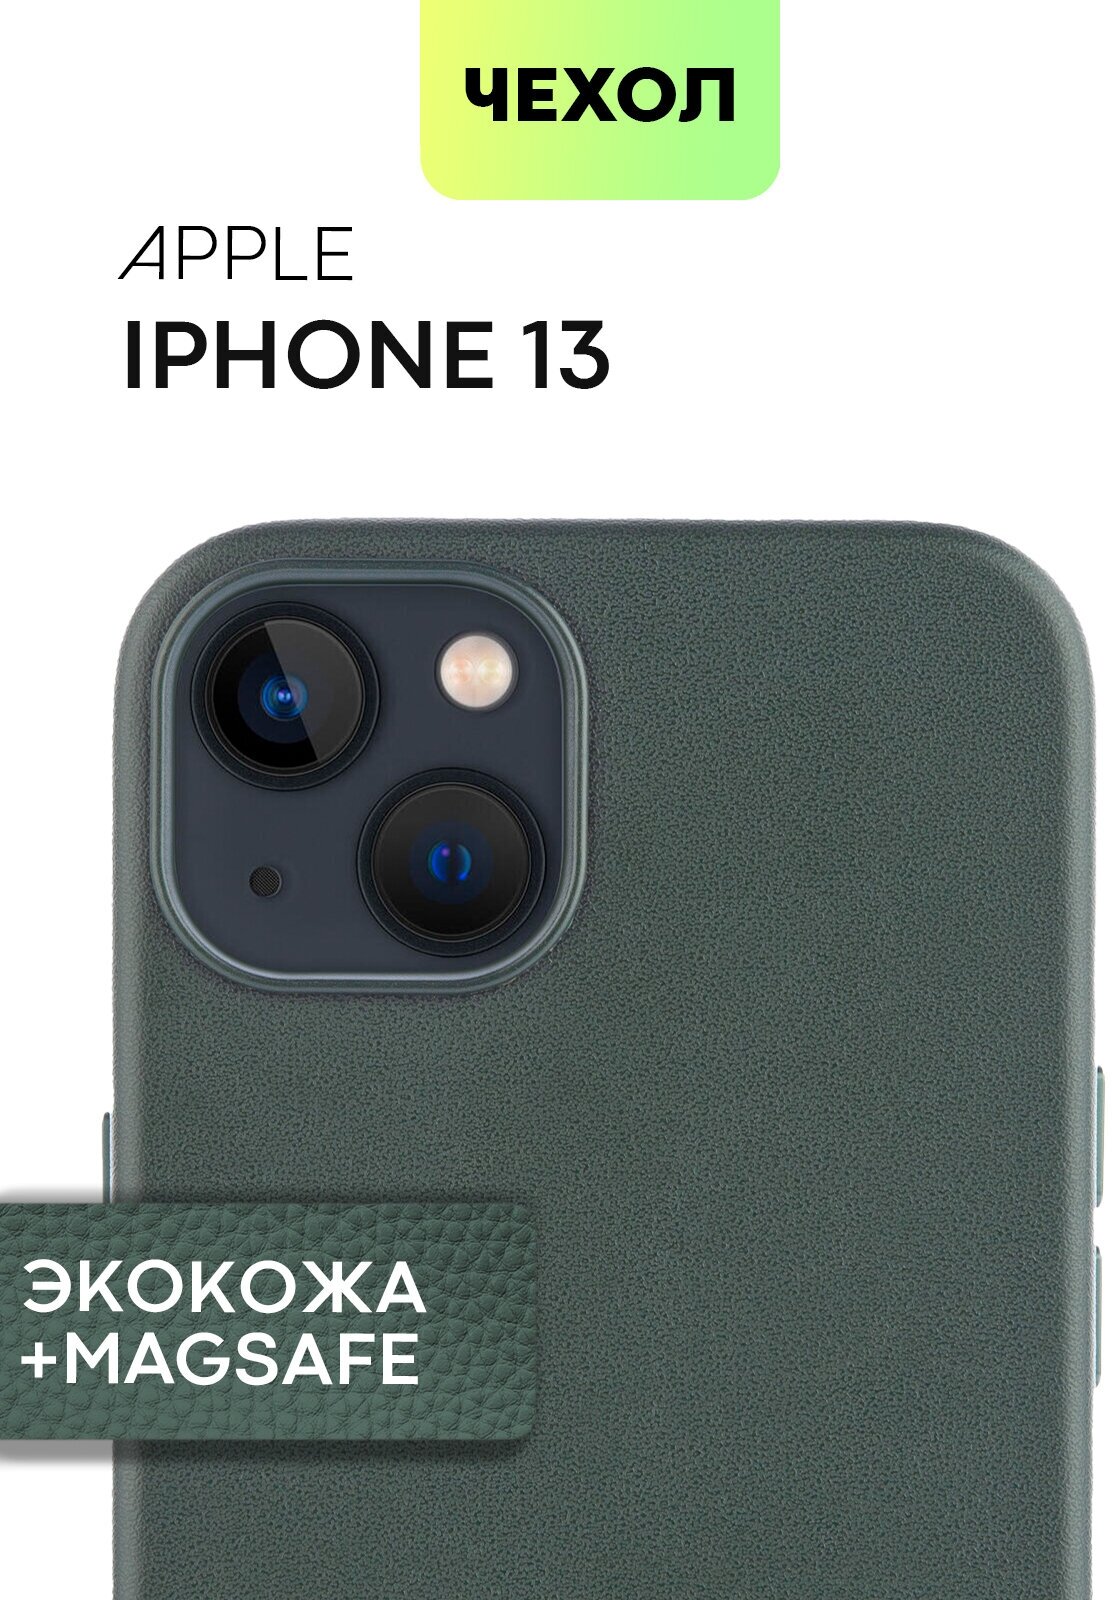 Кожаный чехол MagSafe для Apple iPhone 13 (Эпл Айфон 13) с защитой дисплея, блока камер и микрофиброй (мягкая подкладка), тёмно-зелёная экокожа